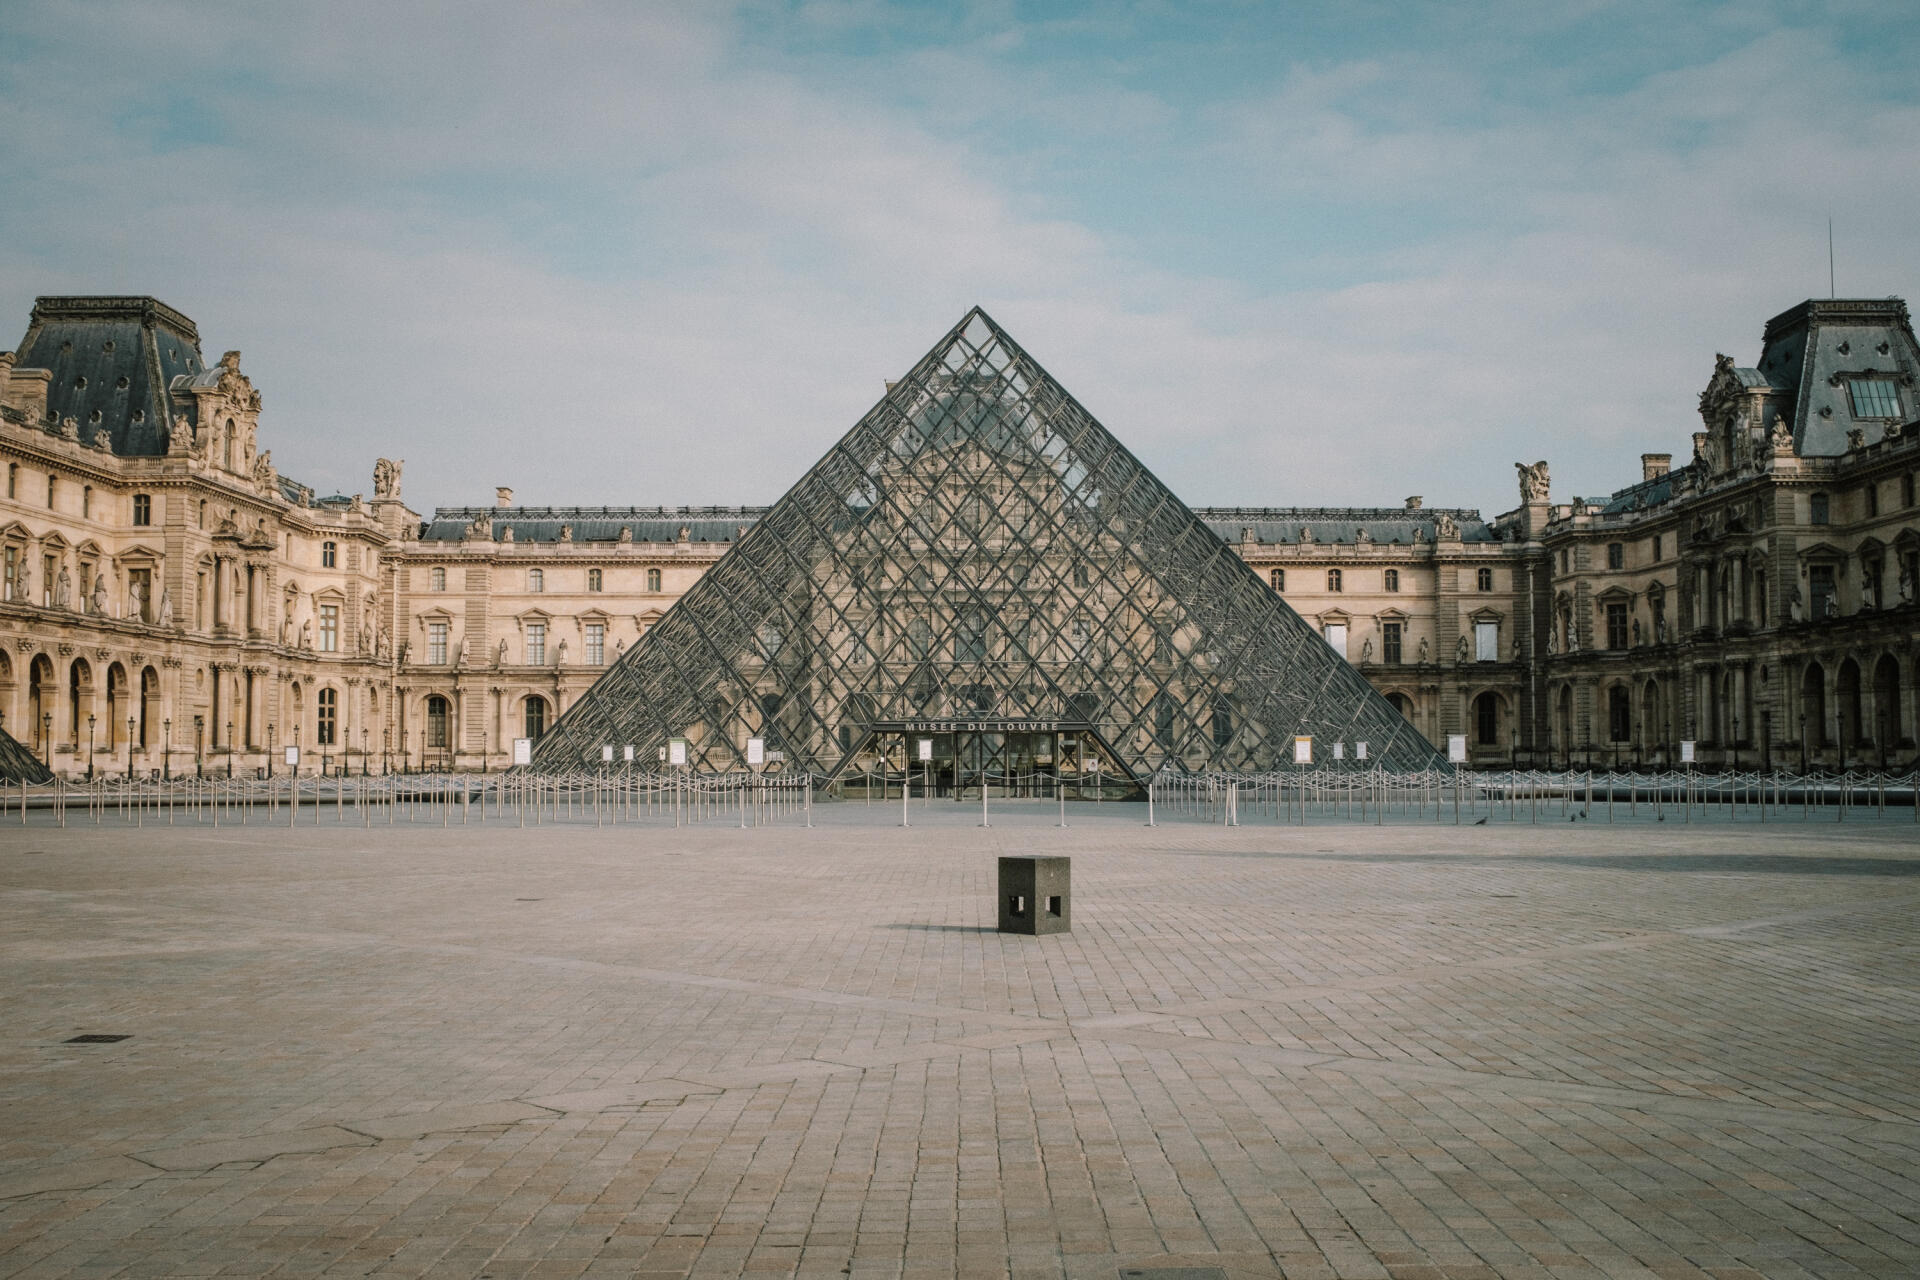 17 mars 2020. La France entre dans son premier confinement général, les rues du pays se vident, comme ici la cour du musée du Louvre, à Paris.